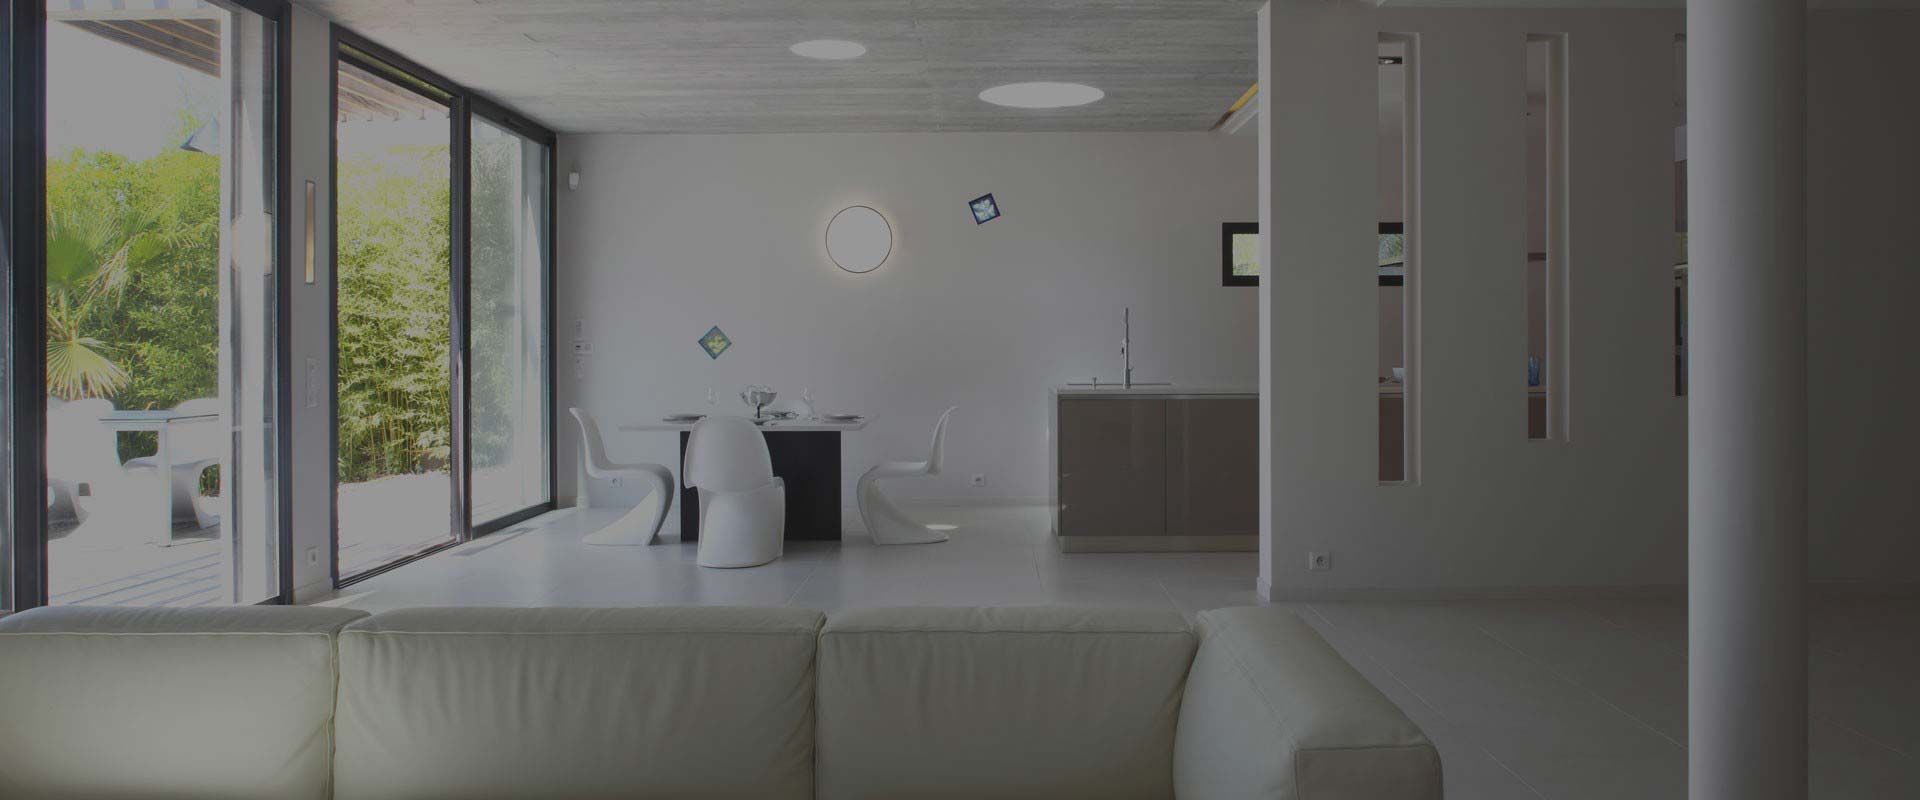 Photo d'une salle à manger de maison moderne